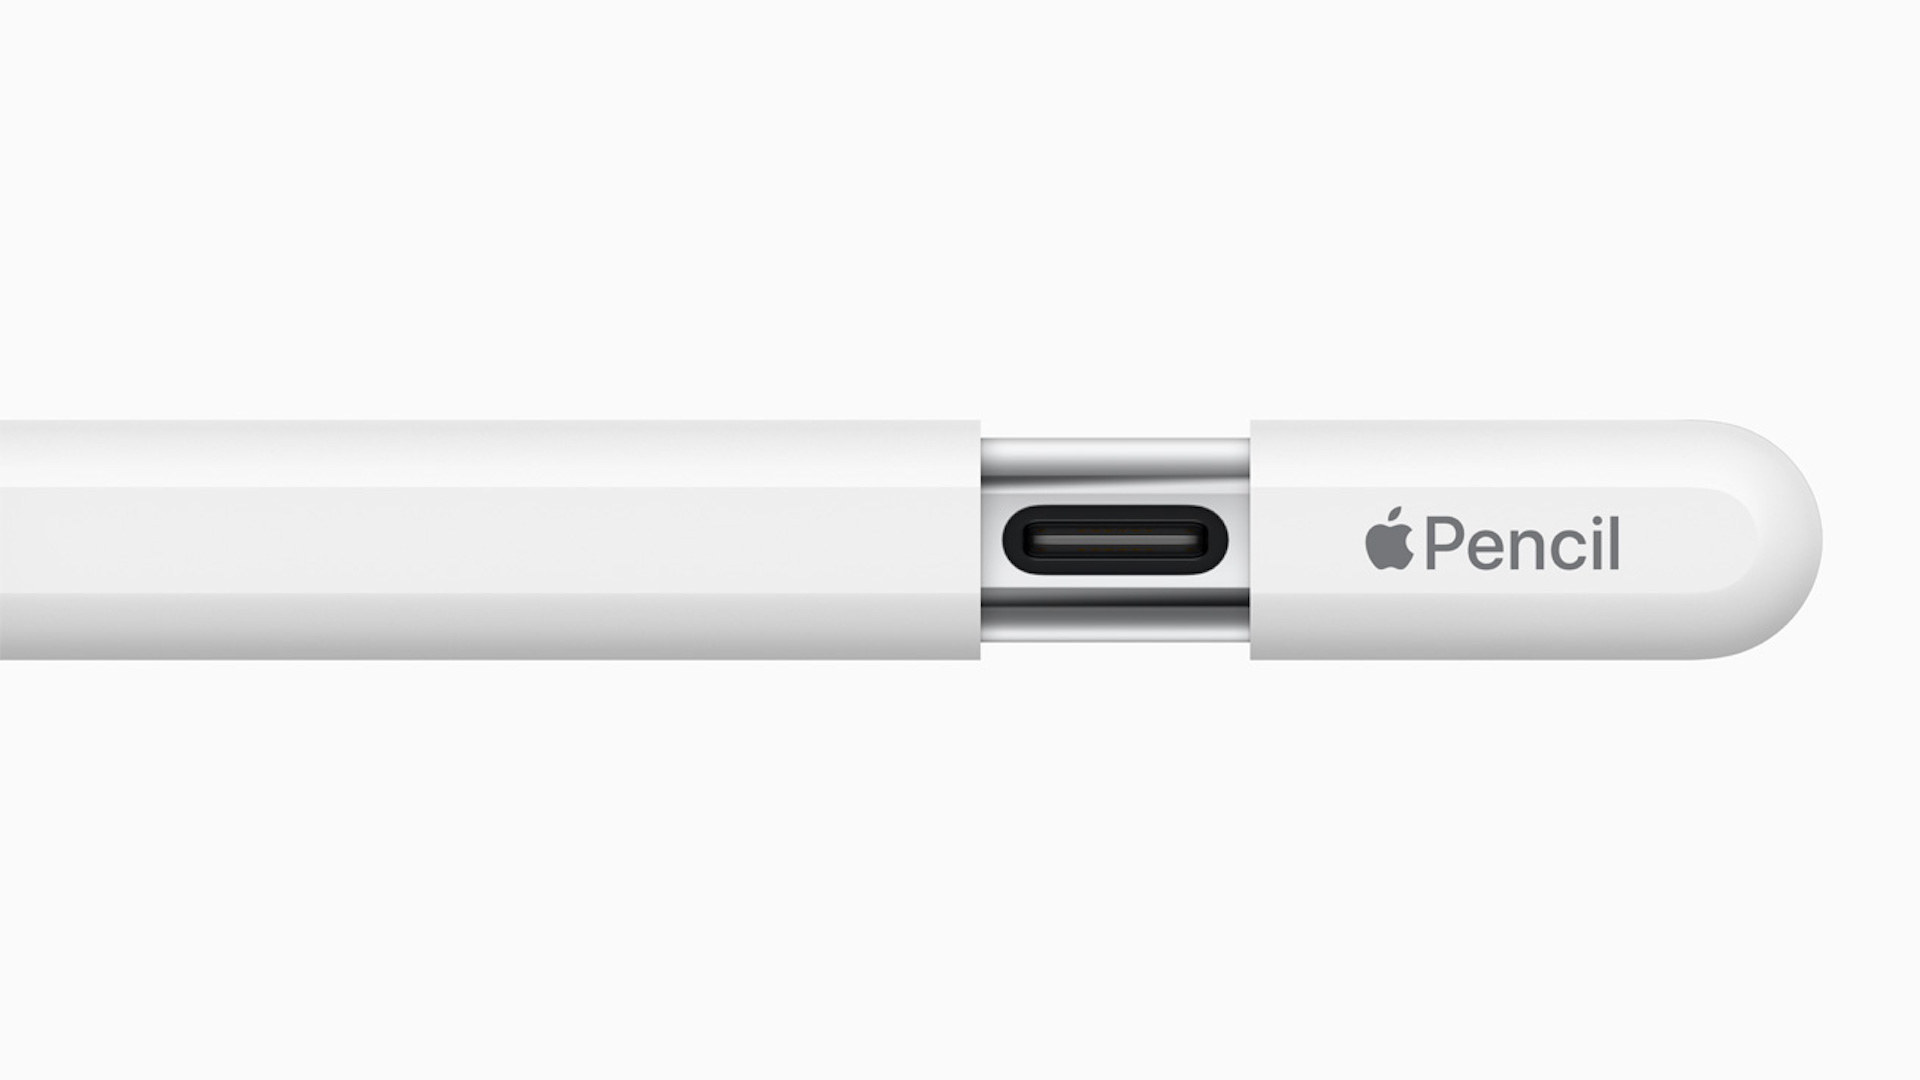 Apple ने अधिक किफायती पेंसिल का अनावरण किया, जो डिजिटल रचनात्मकता में गेम चेंजर है